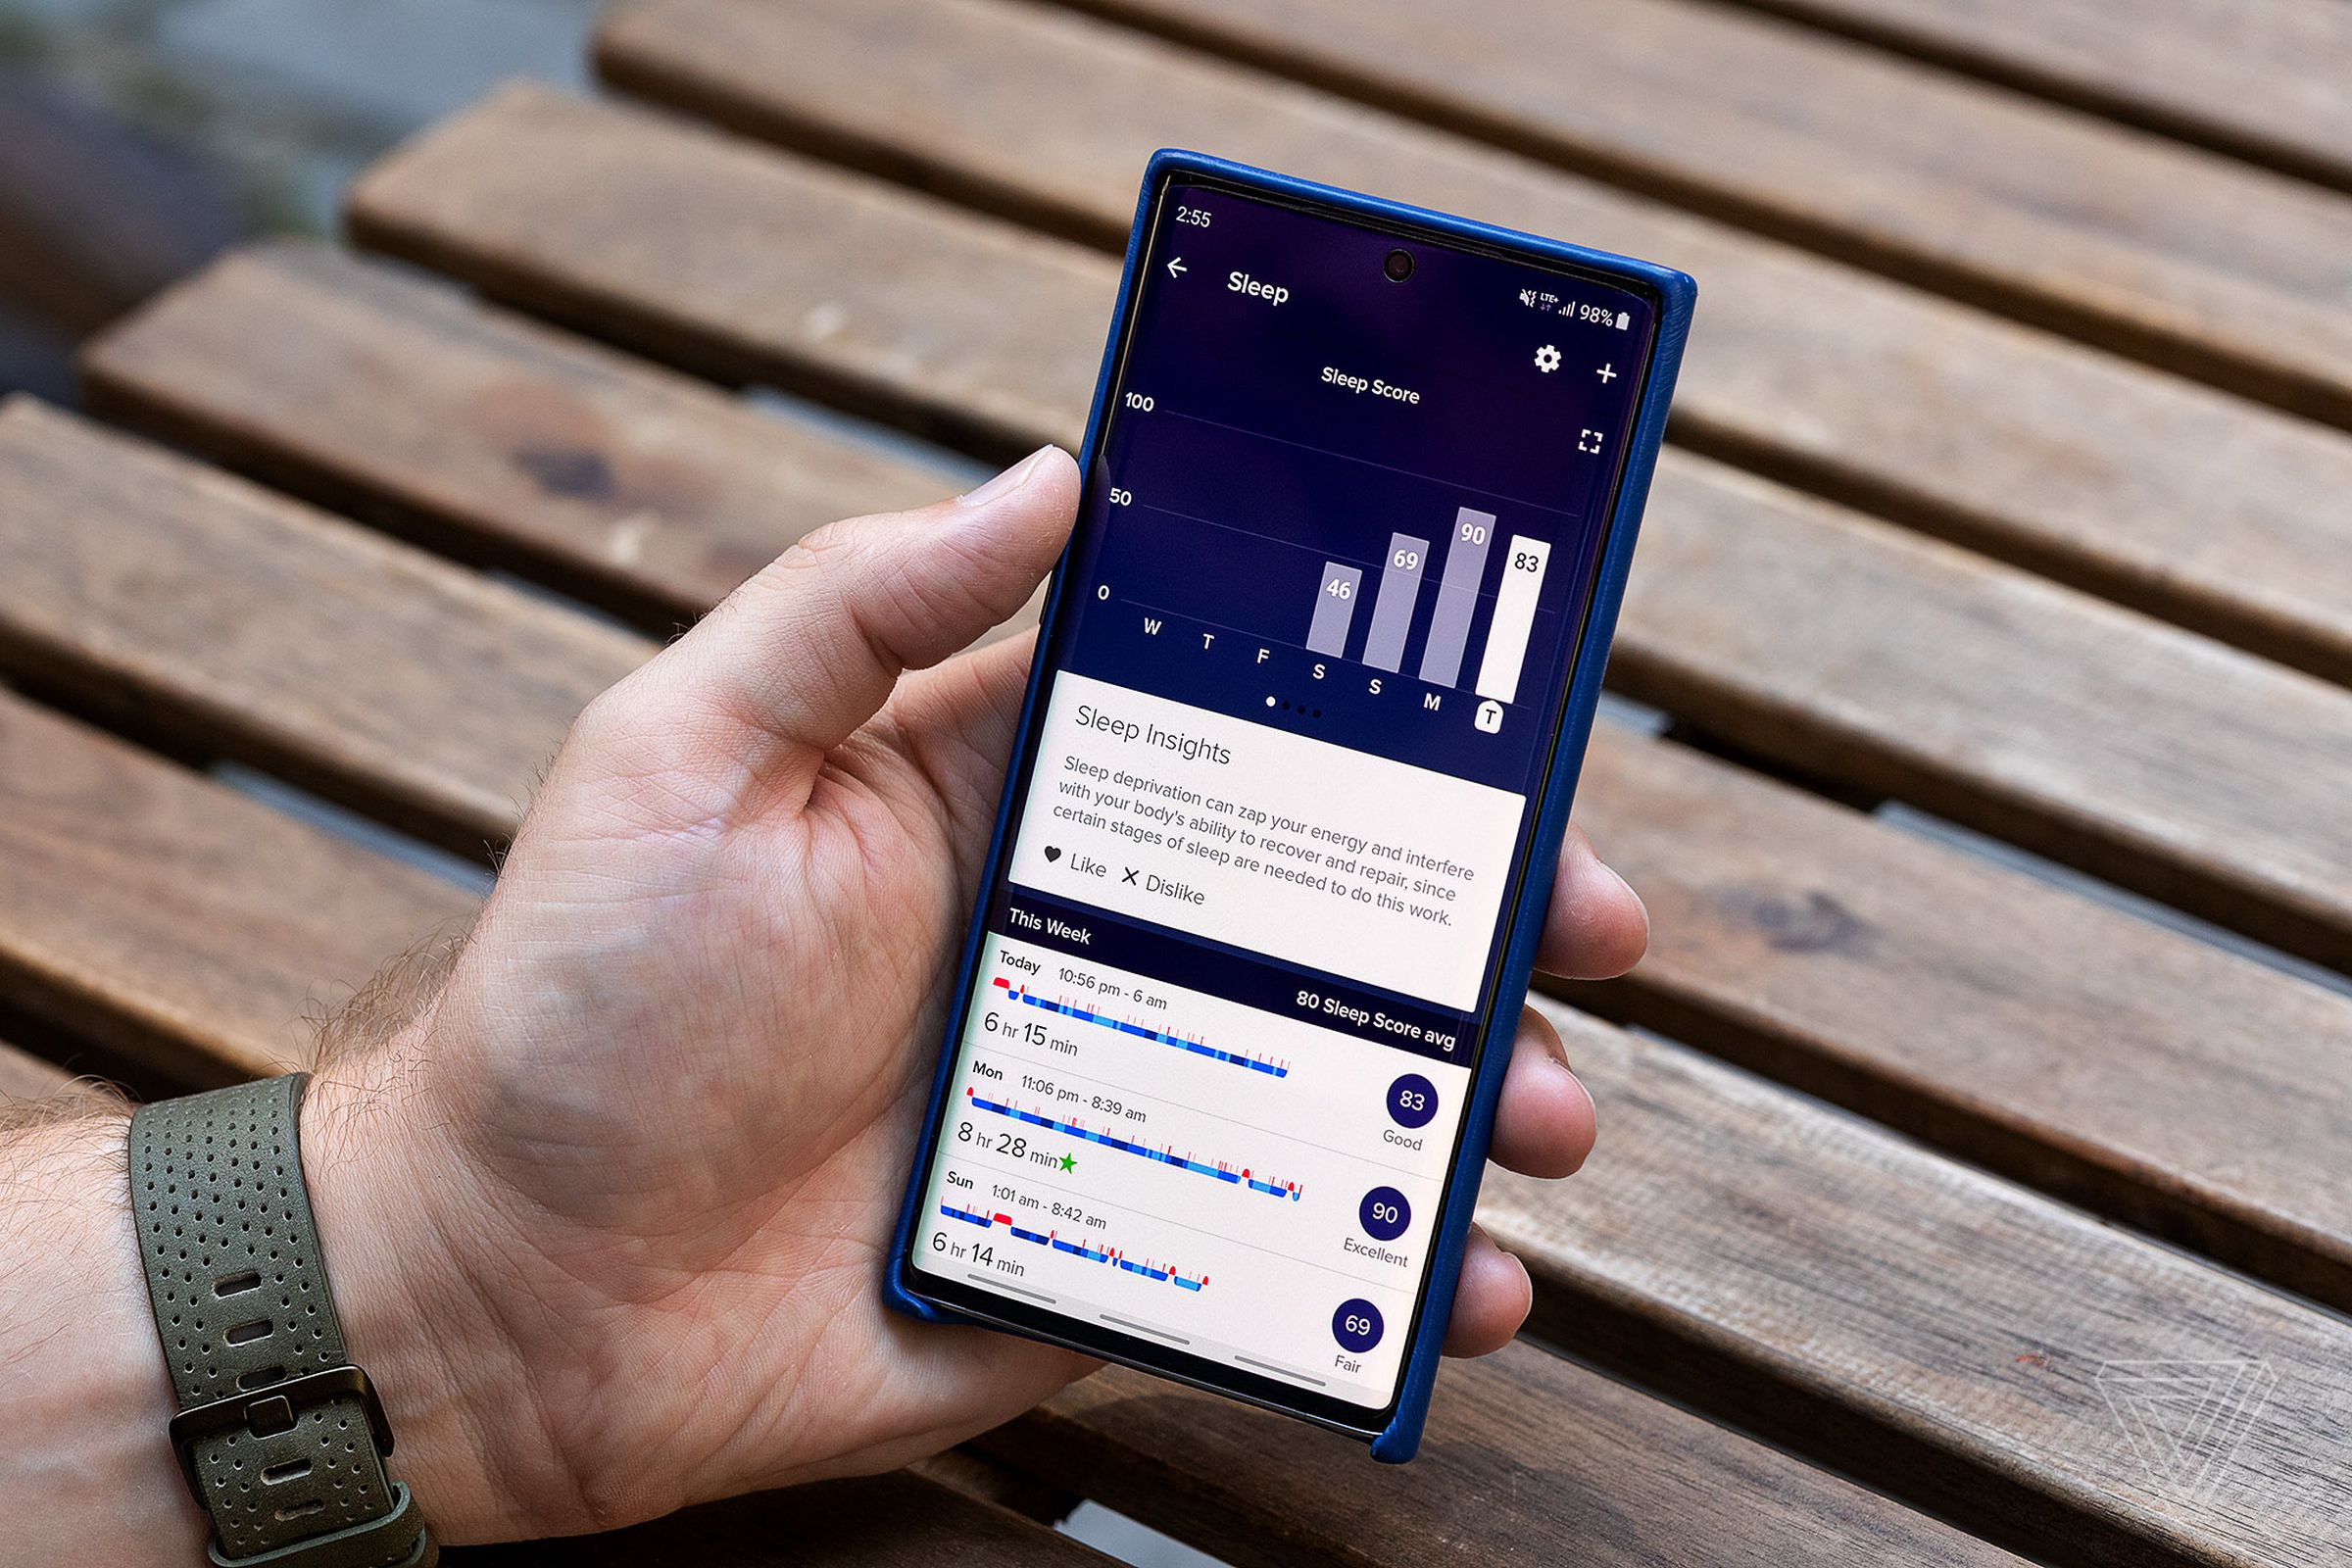 tech news Fitbit sleept racking screen shown on a phone